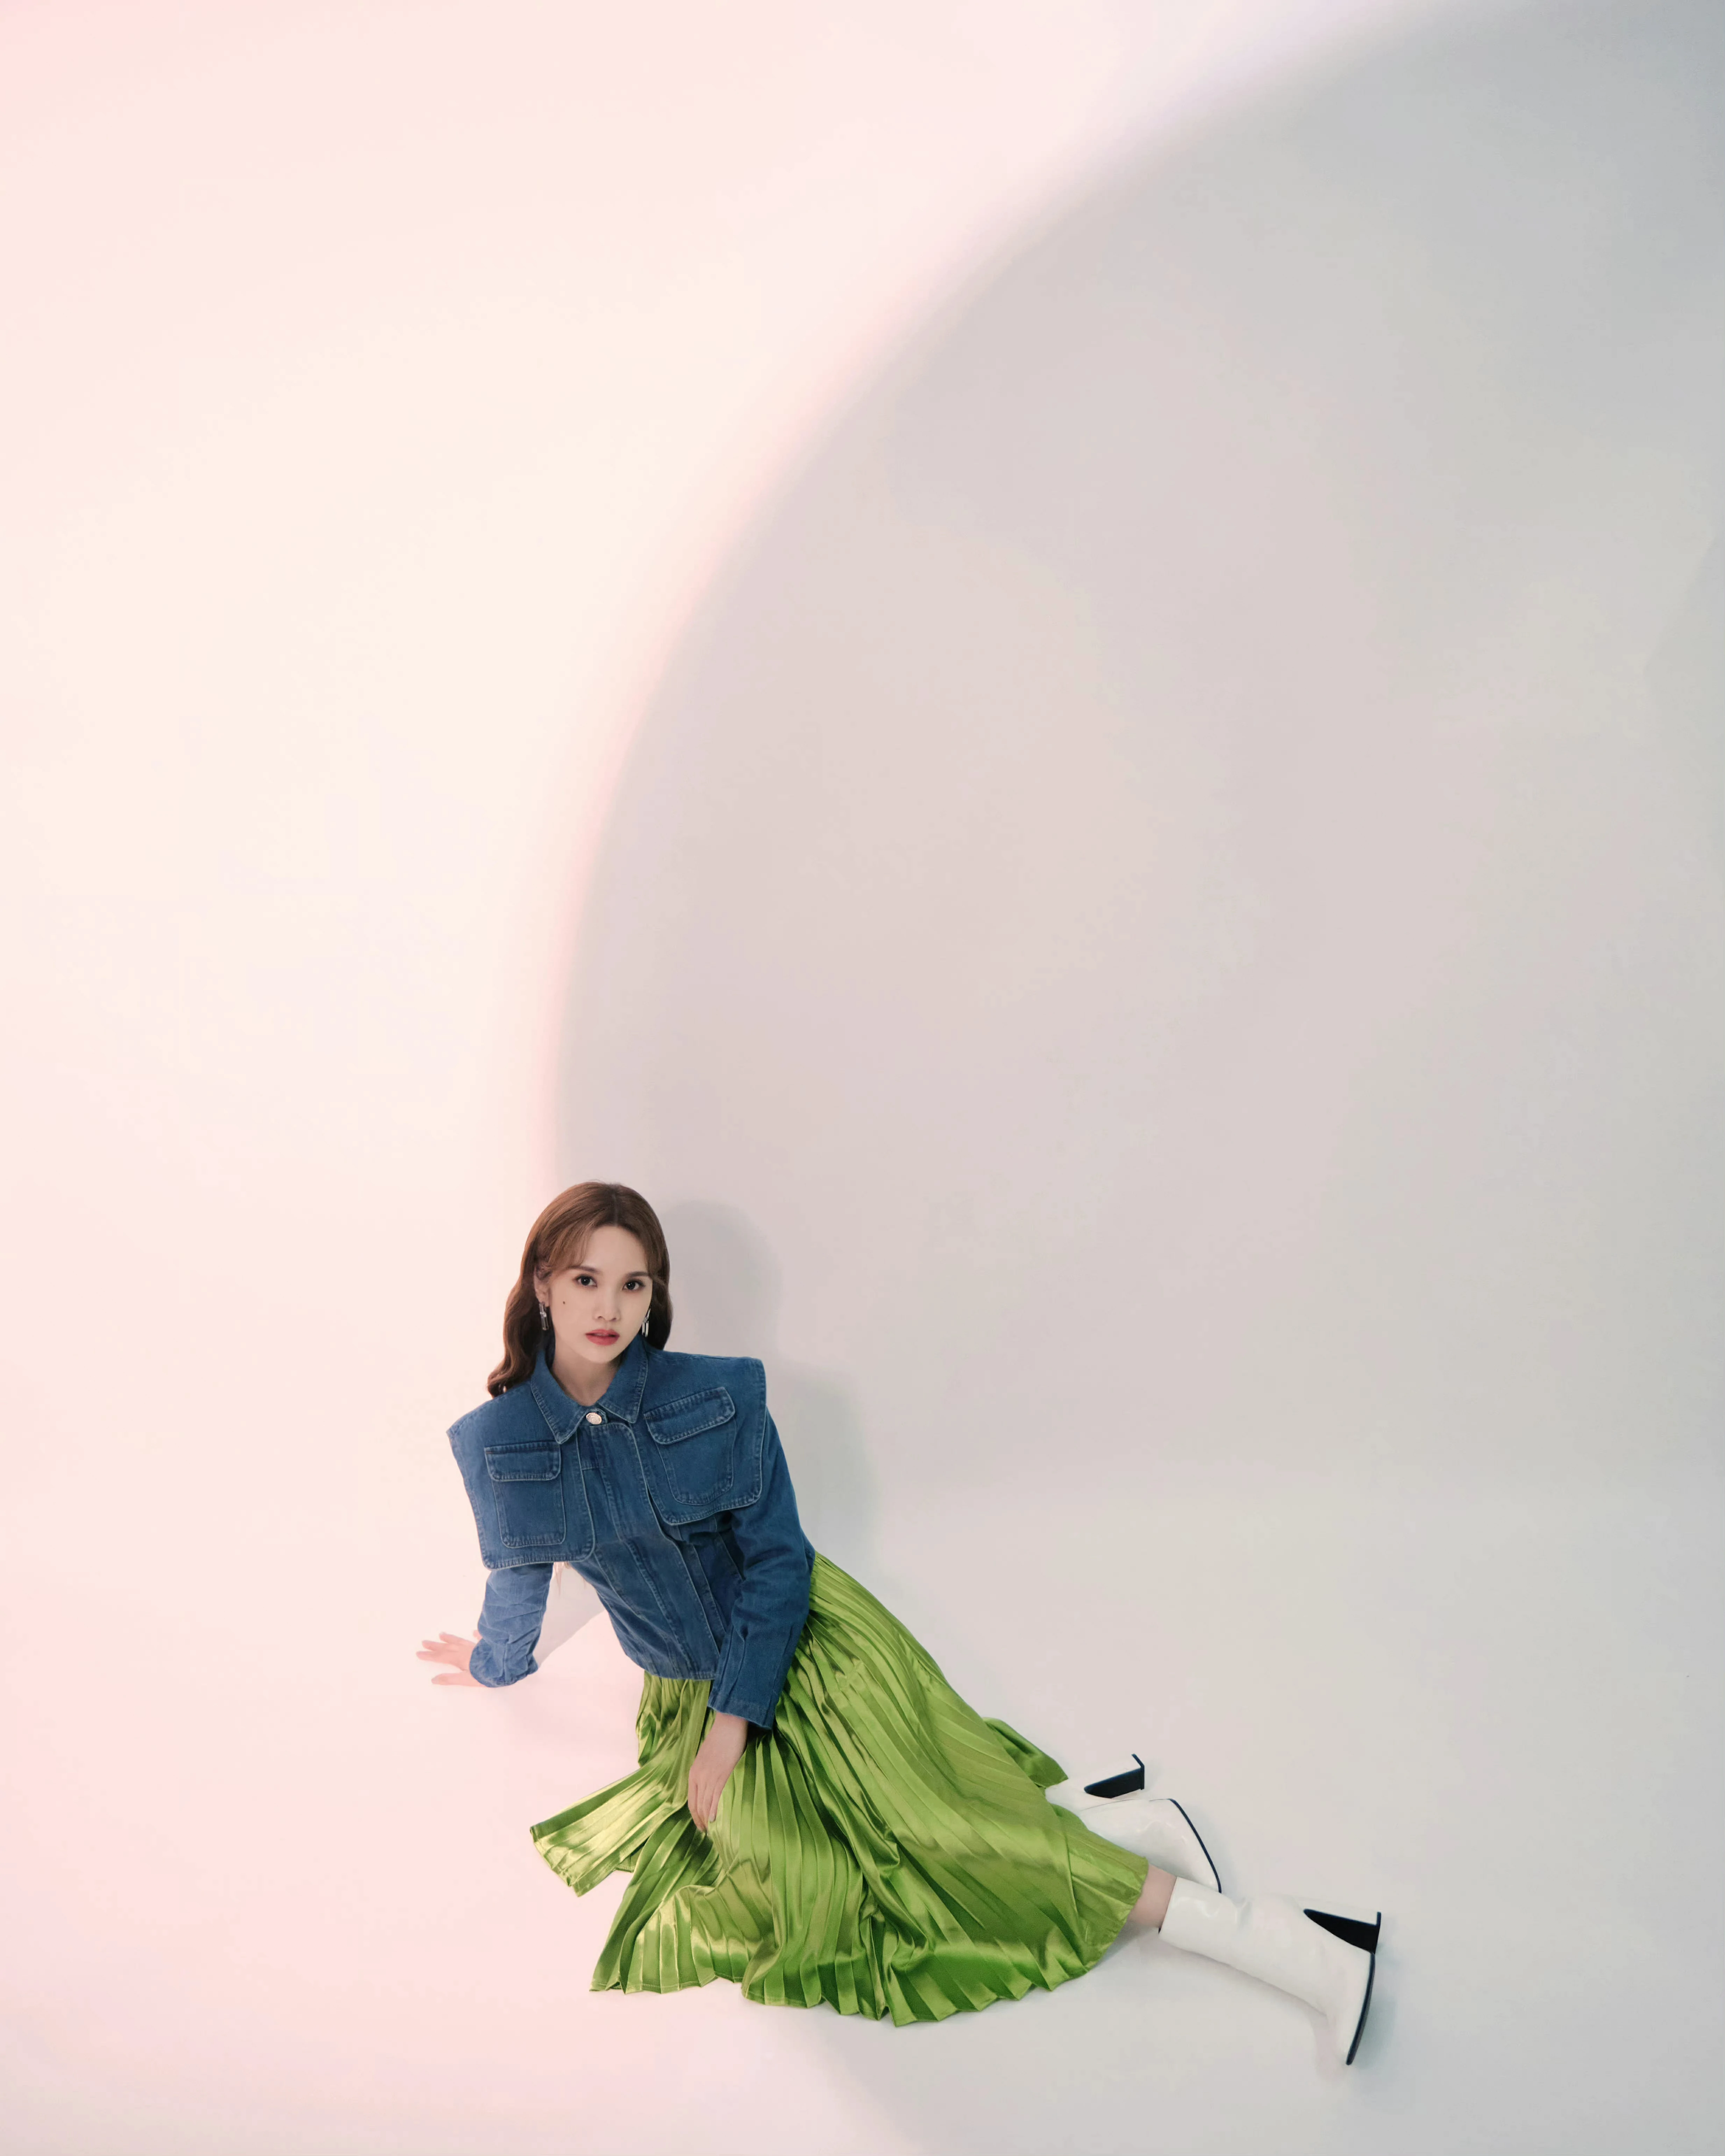 杨丞琳《我们的歌》造型写真释出 牛仔外套搭果绿半裙可甜可盐,3